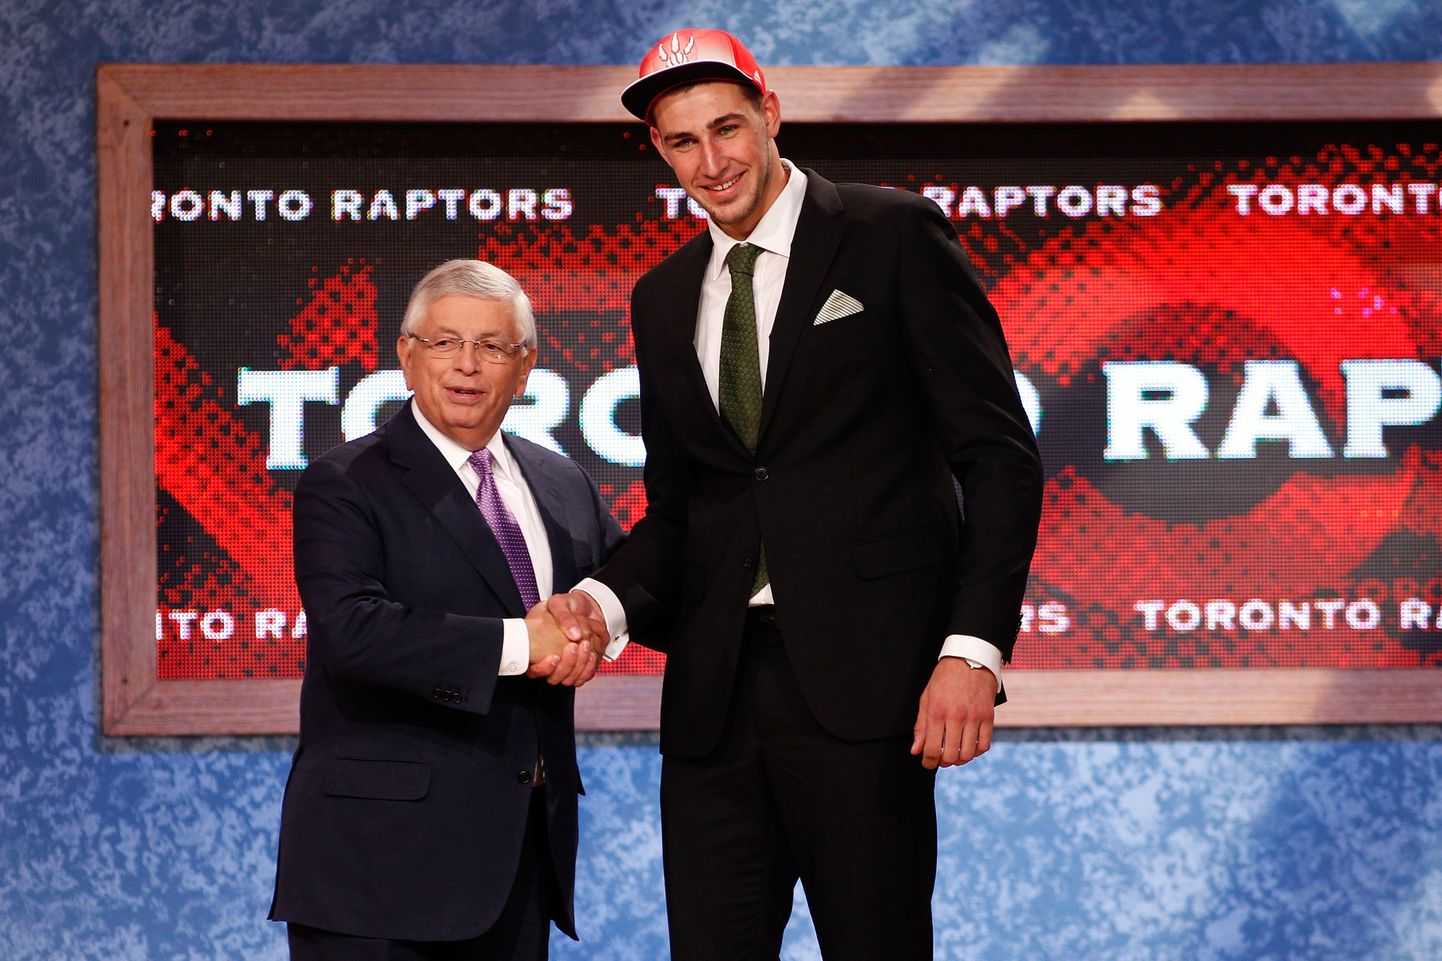 Leedu korvpalli tulevikulootus Jonas Valanciunas valiti tänavuses NBA draftis viiendana.